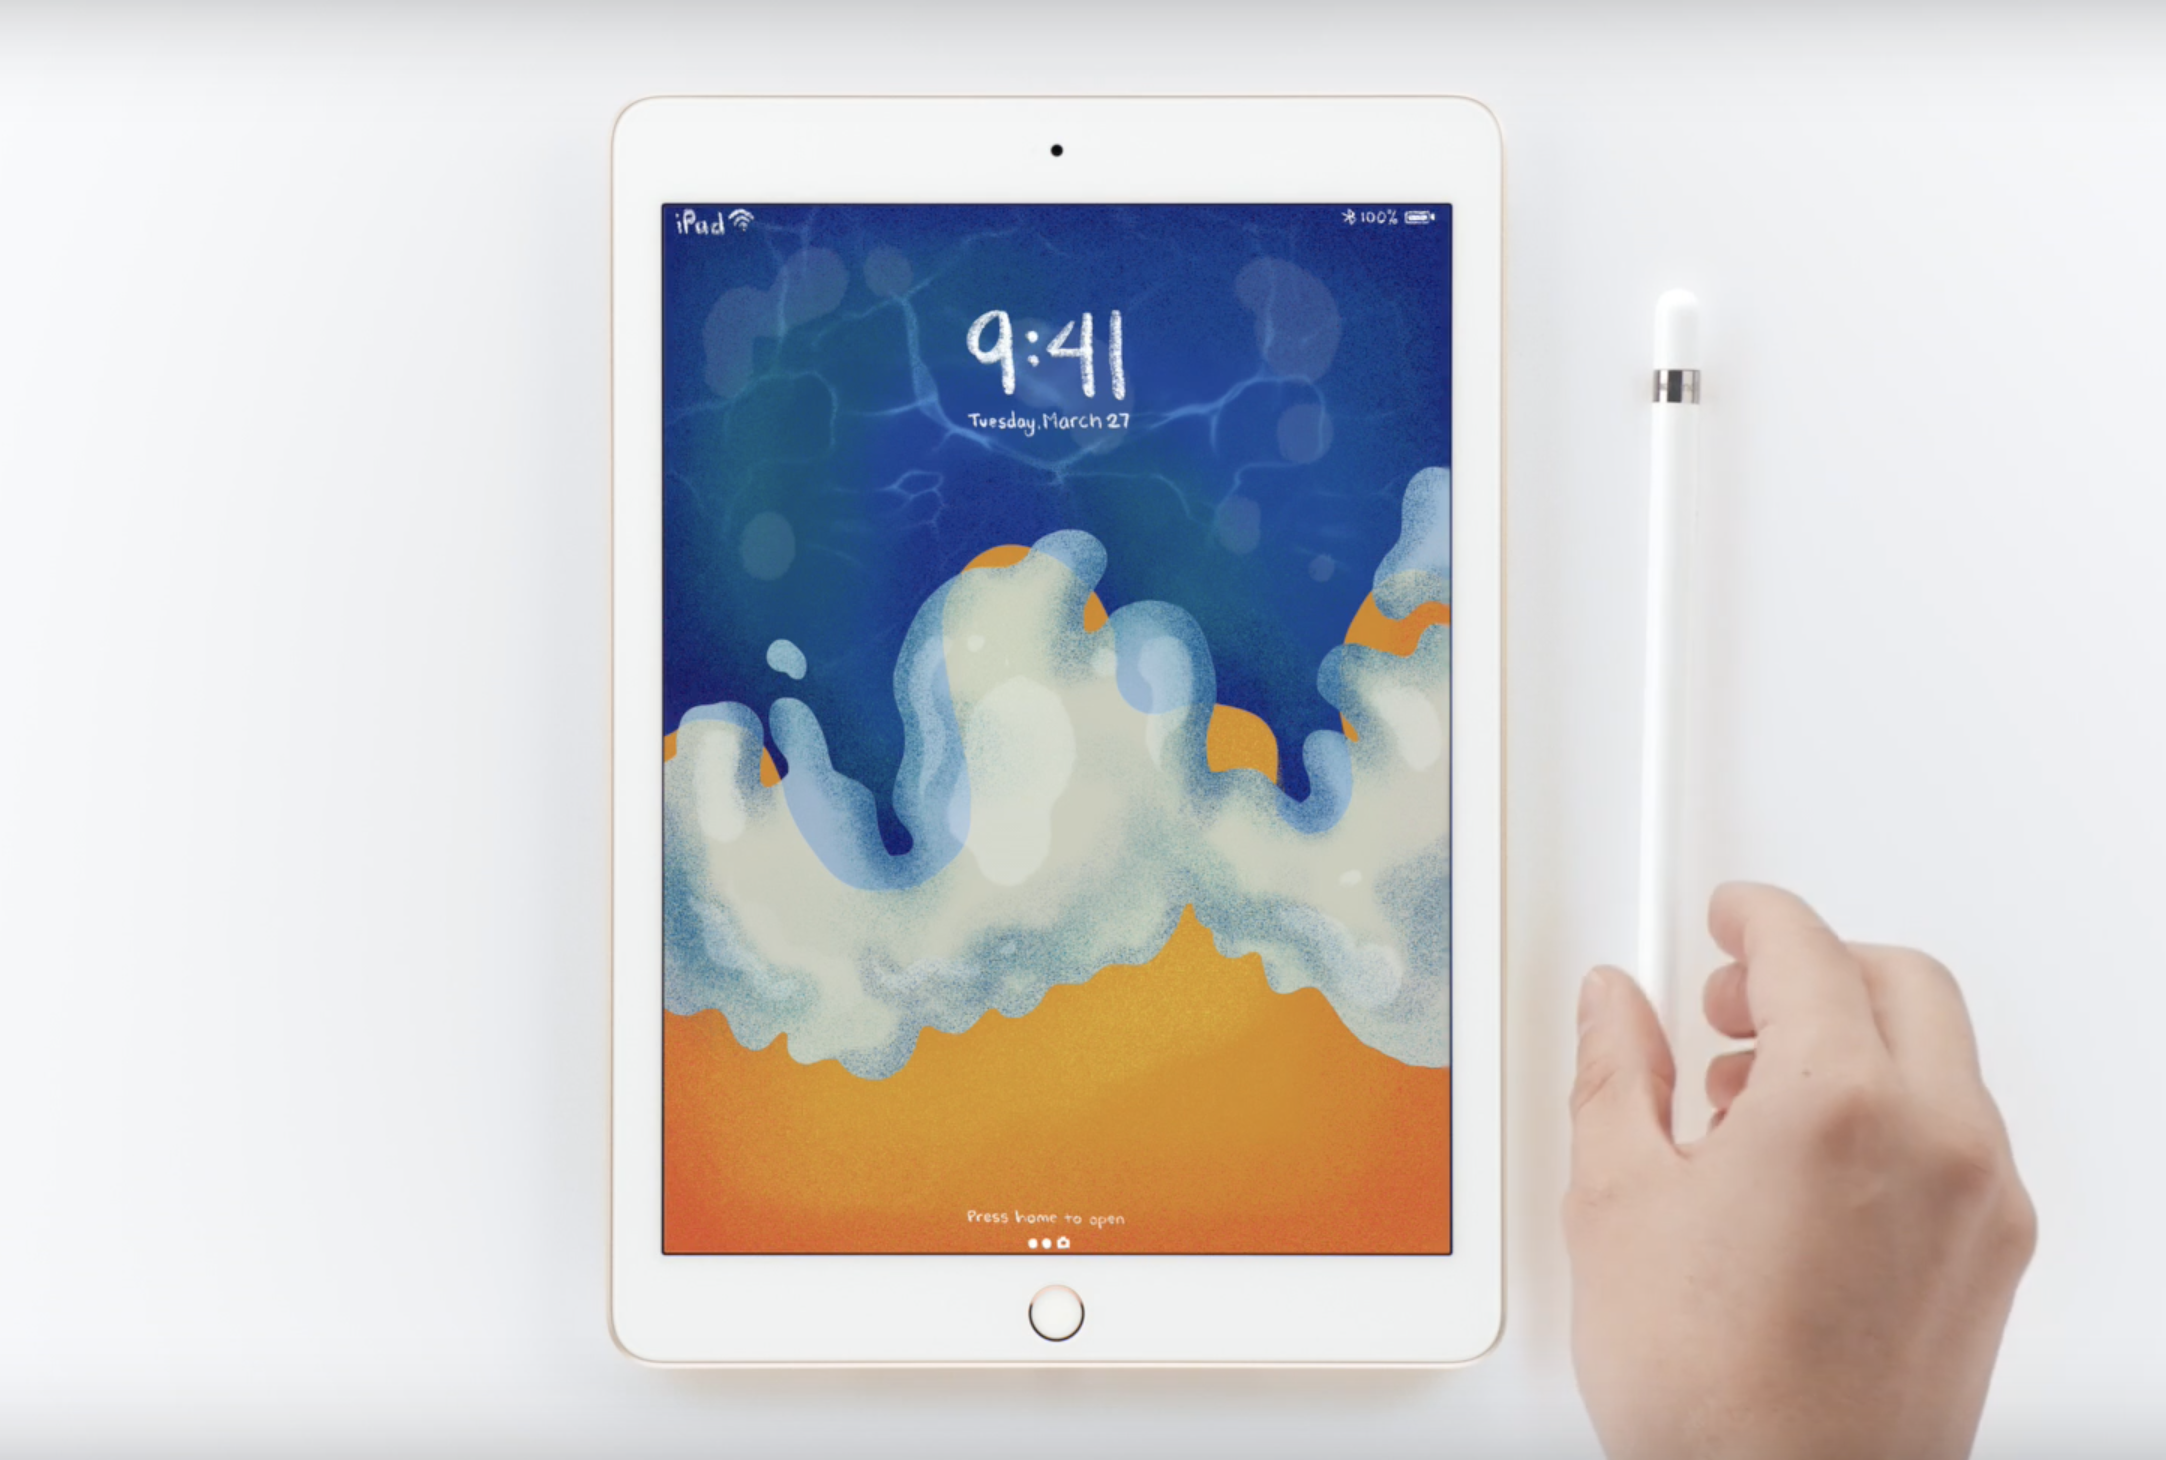 Ảnh nền đẹp, chất lượng cao: Bộ hình nền từ iPad 9.7-inch mới